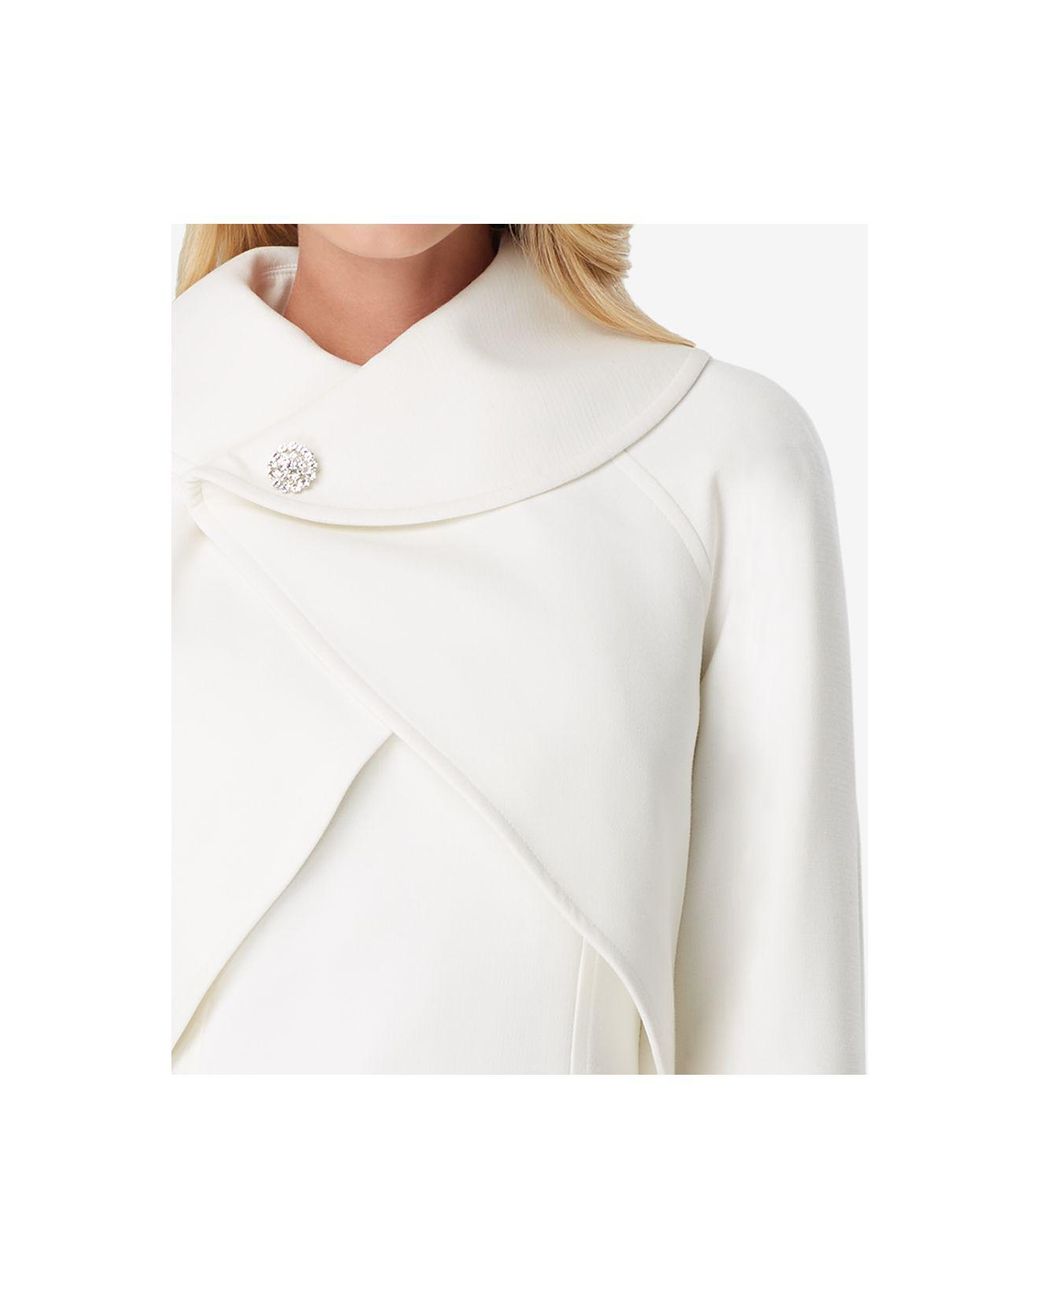 Tahari Envelope-collar Jacket & Dress Suit in White